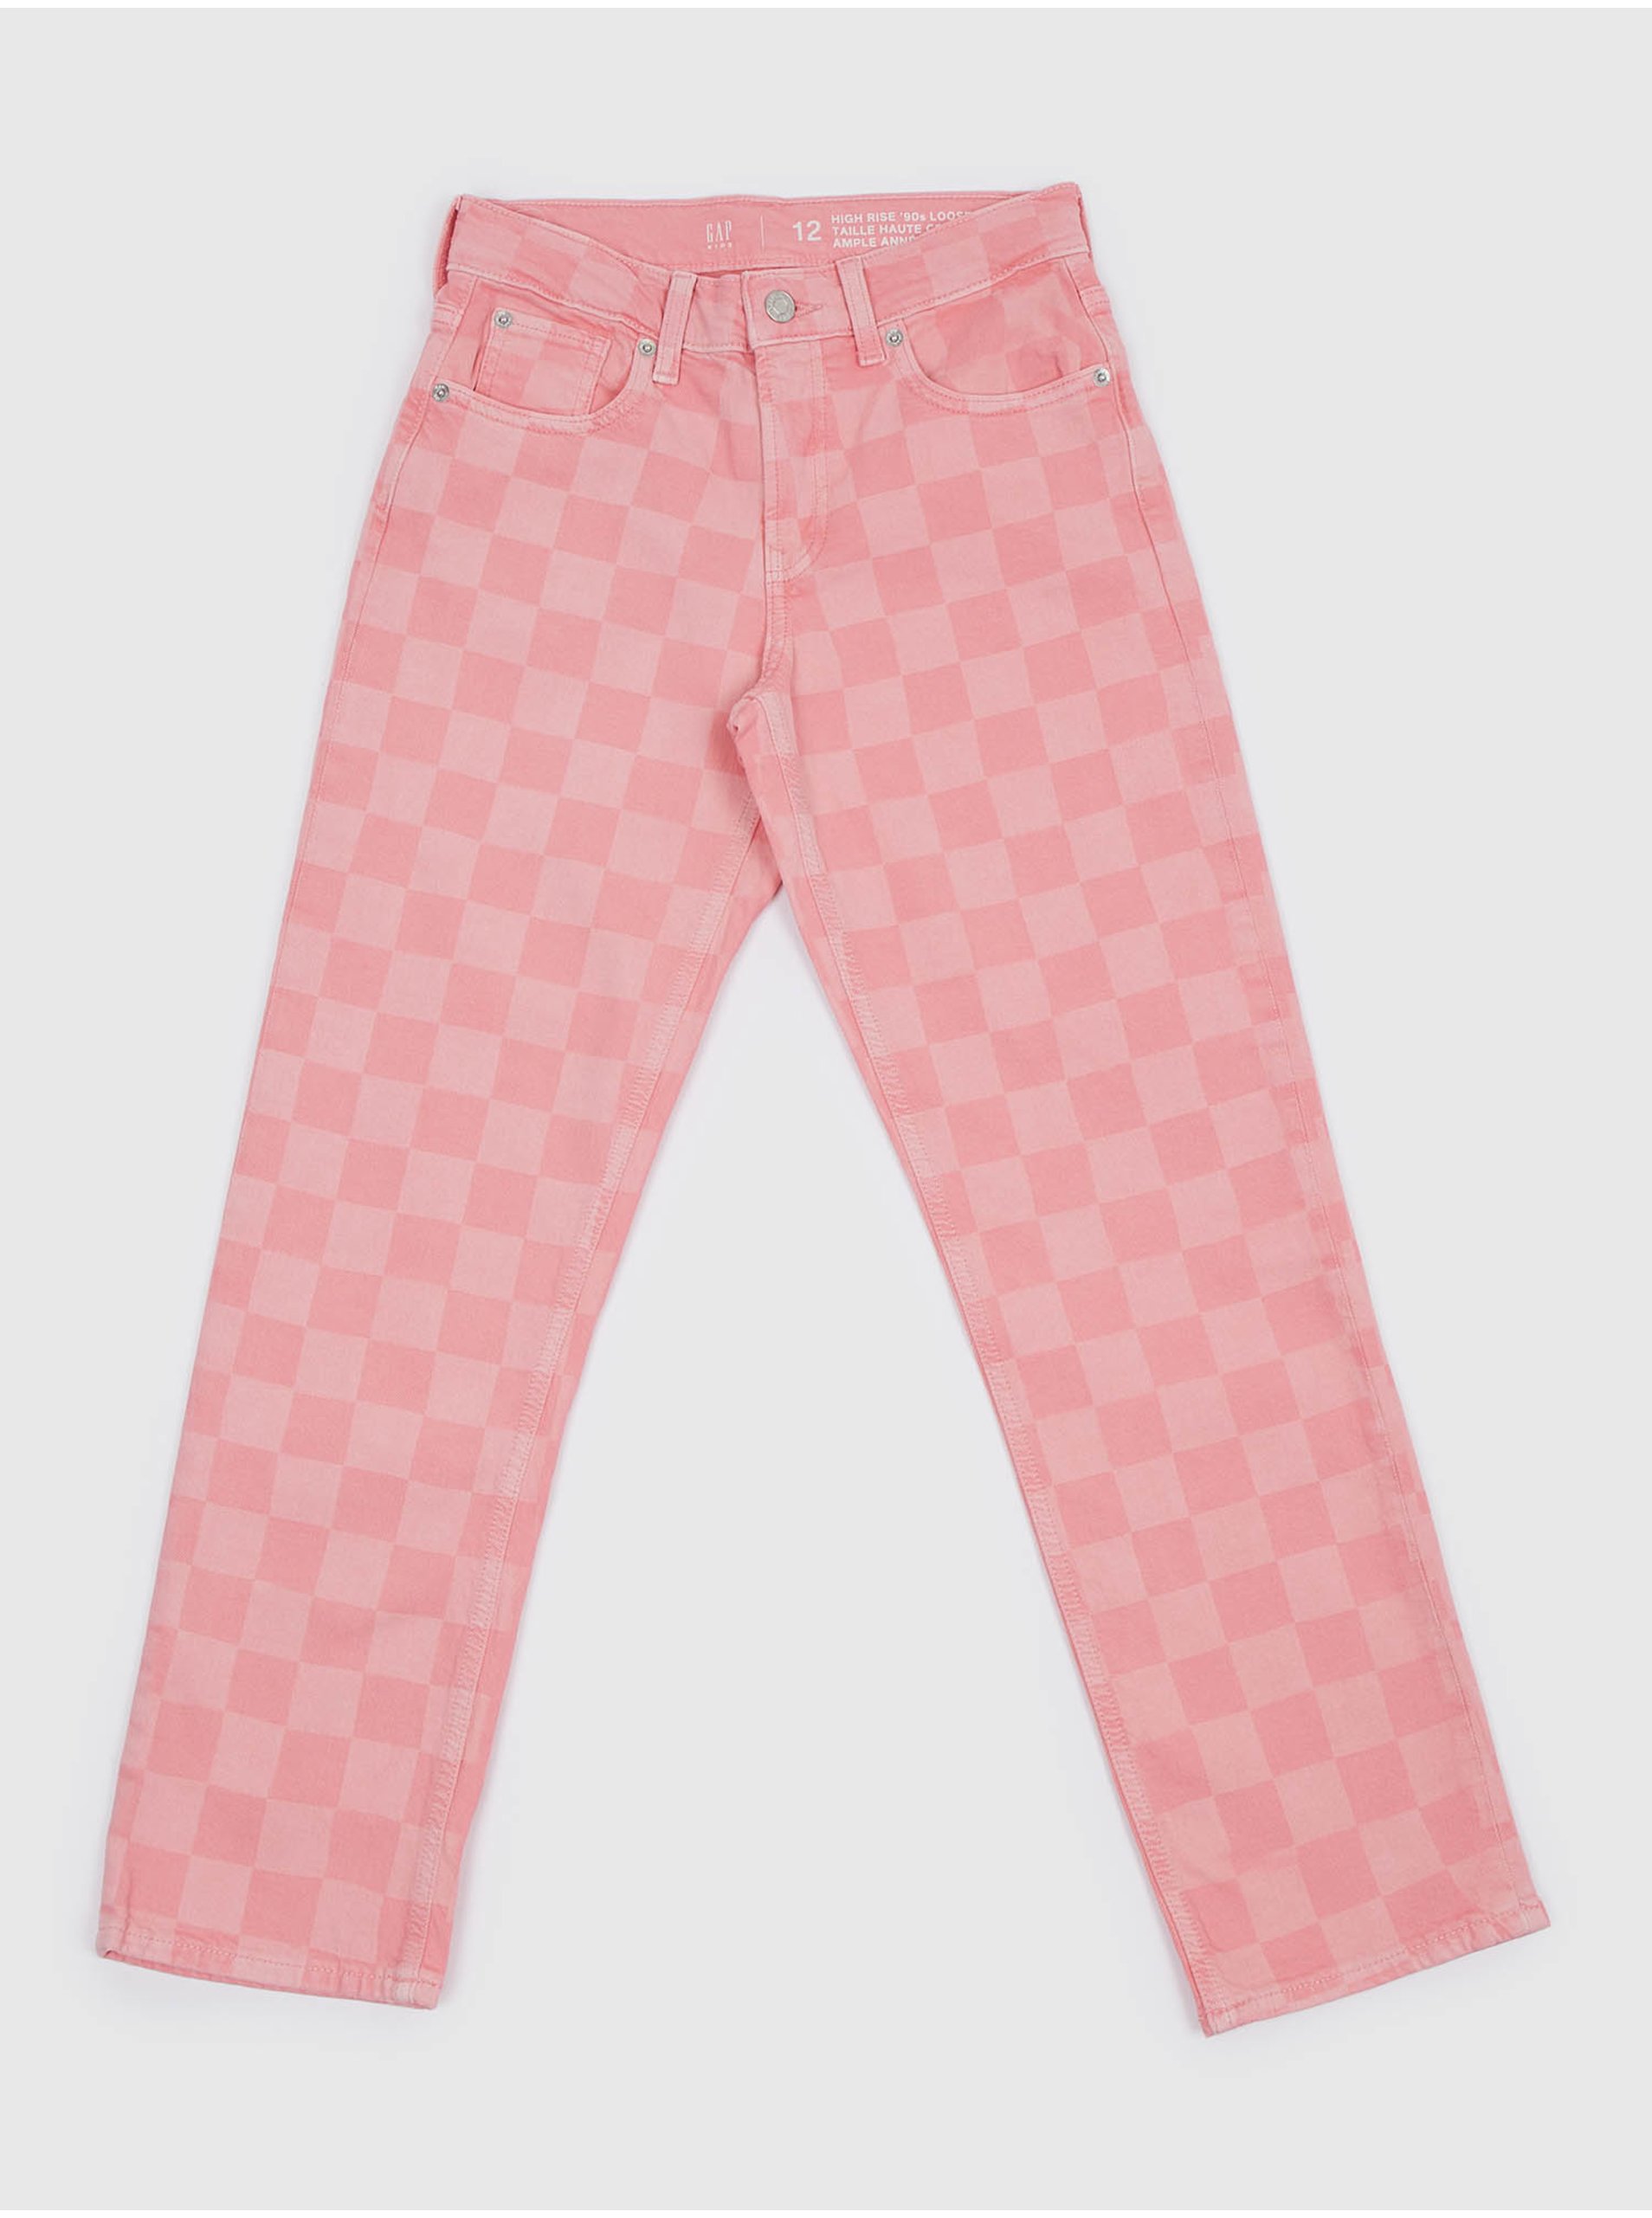 Lacno Ružové dievčenské kockované rifľové nohavice GAP